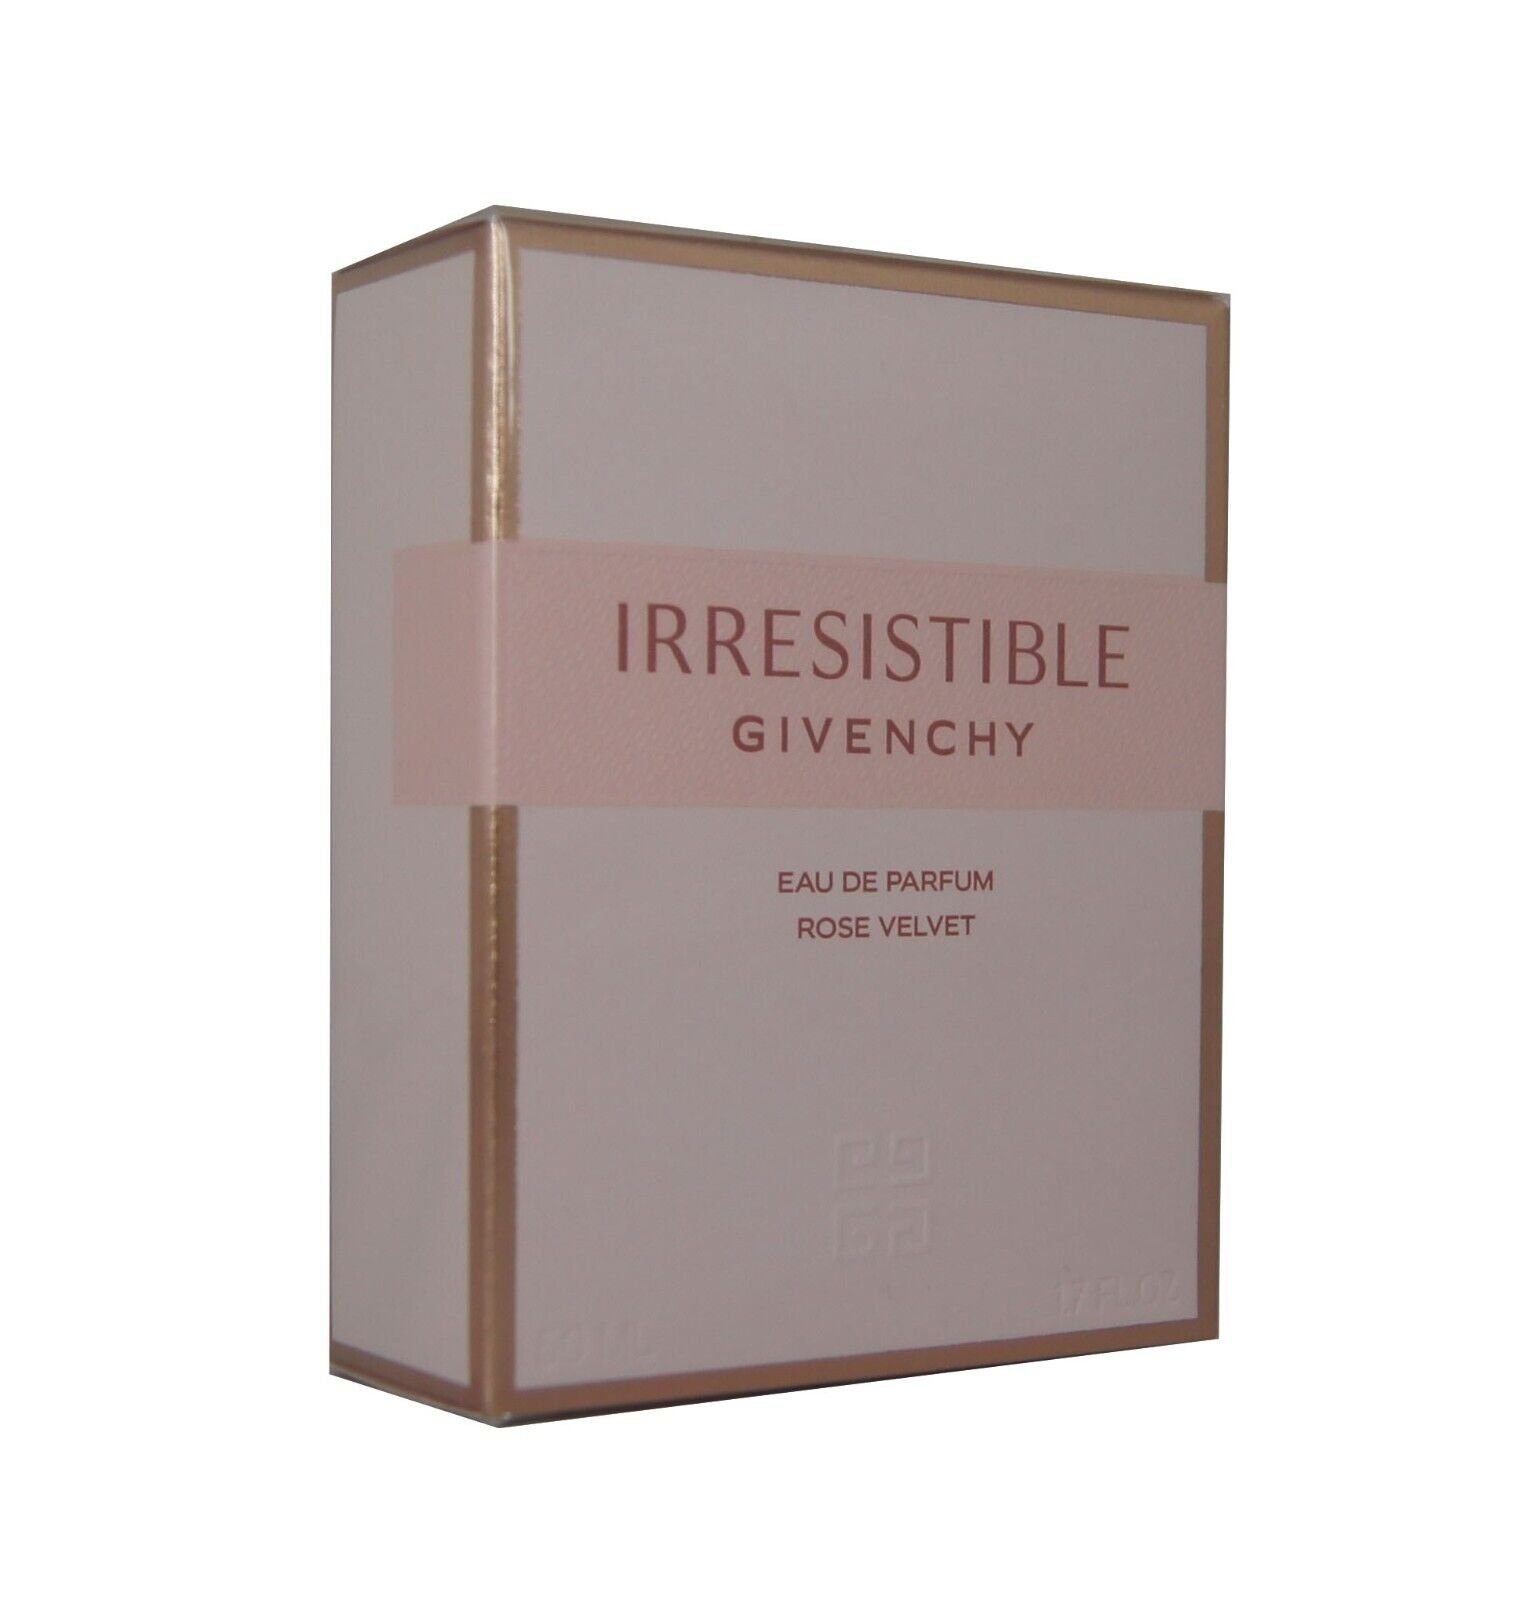 GIVENCHY Eau de Parfum Givenchy Irresistible Rose Velvet Eau de Parfum edp 50ml.